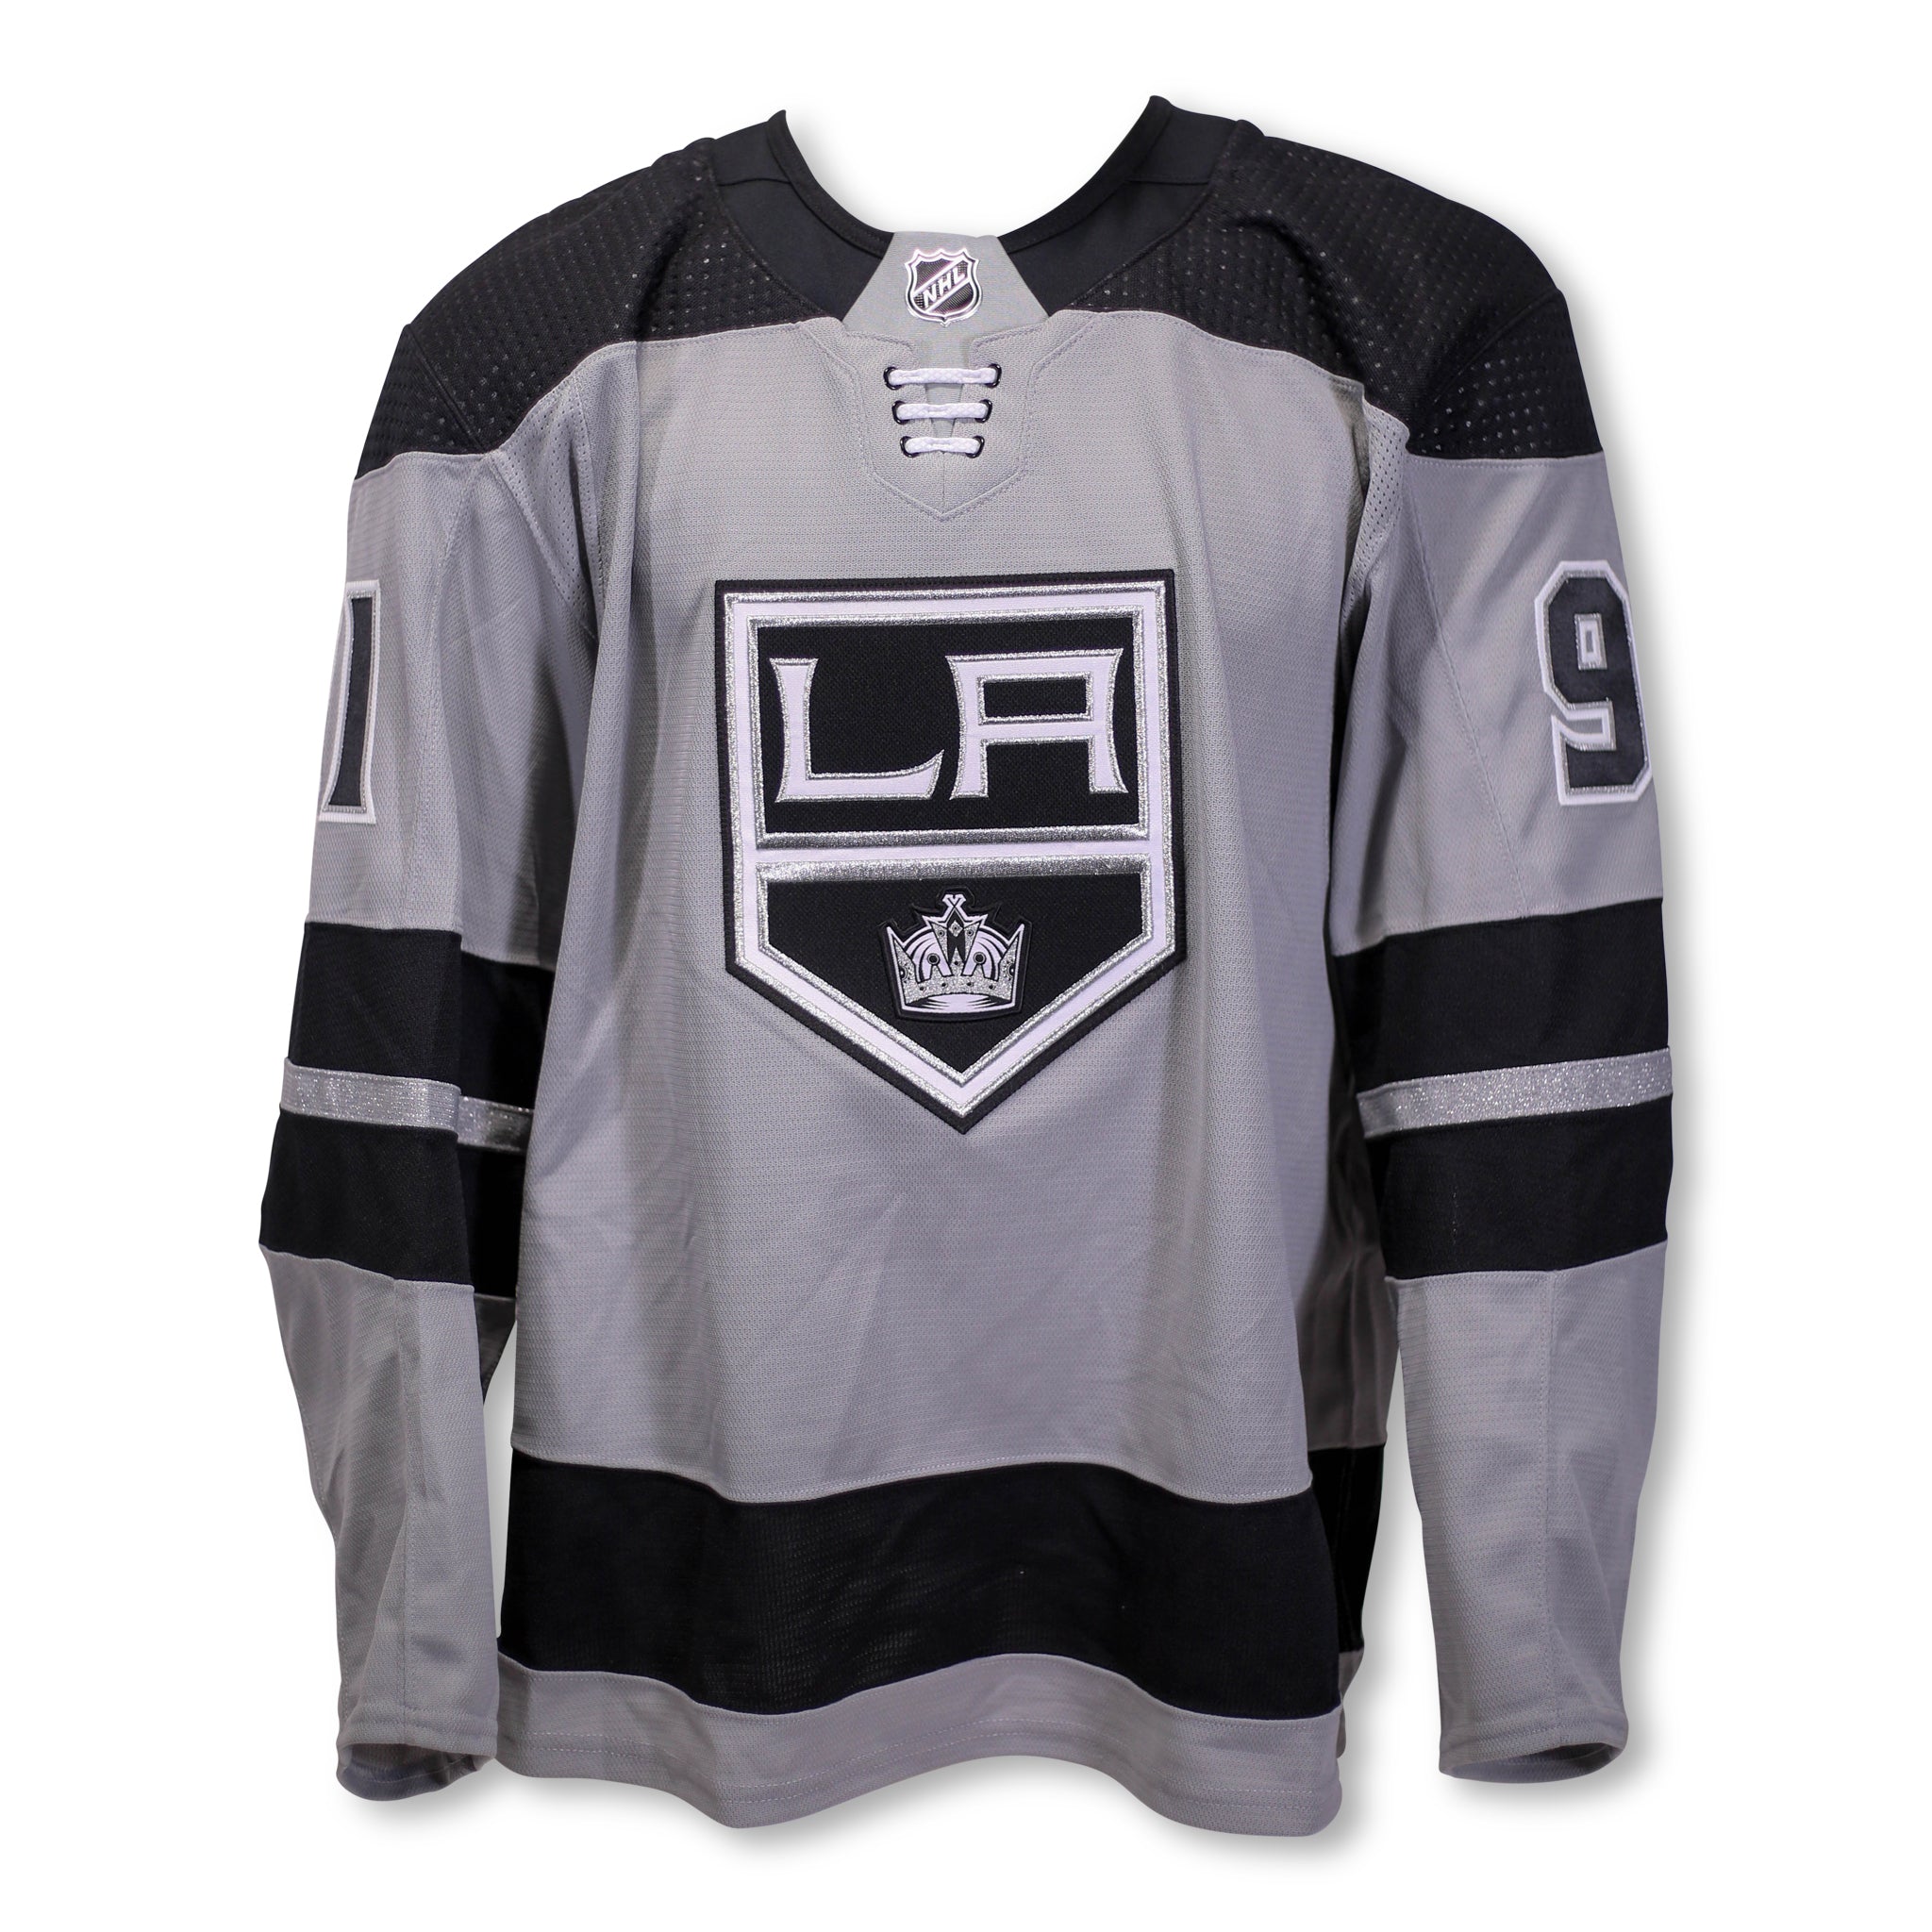 LA Kings Reebok NHL Alternate Jersey Black/White/Silver Size Large